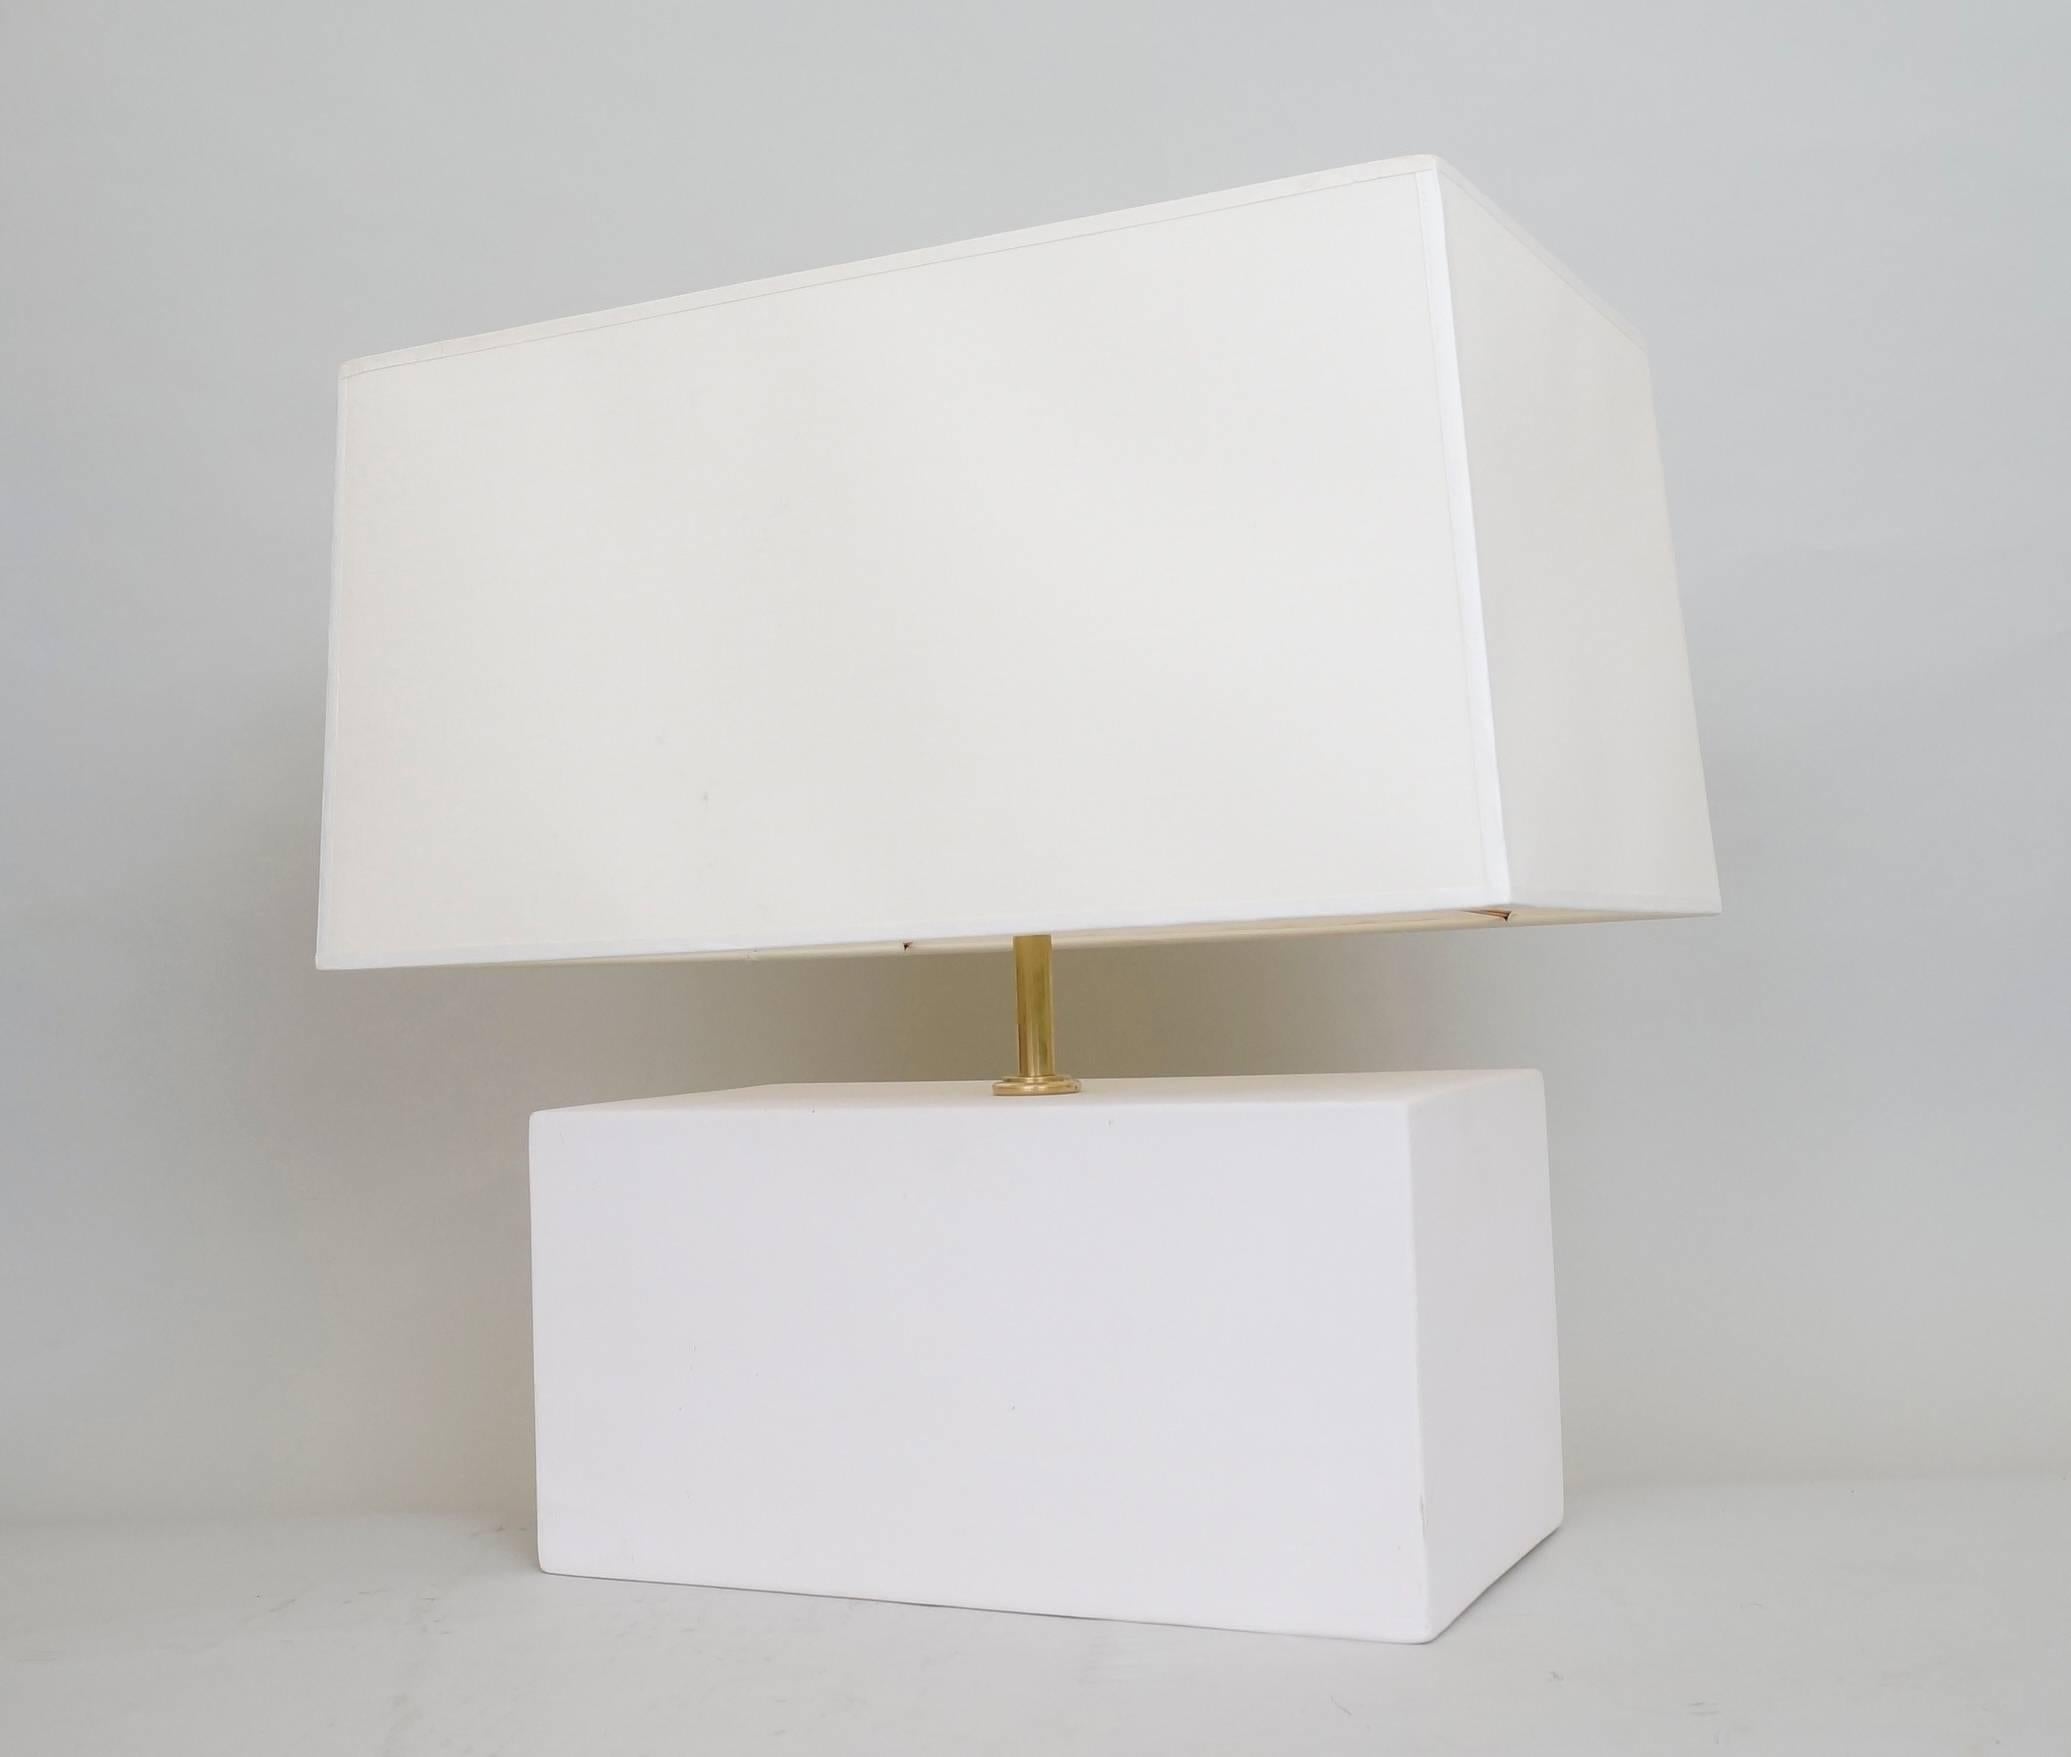 Unglazed Mid-20th Century Pair of Rectangular Ceramic Table Lamps